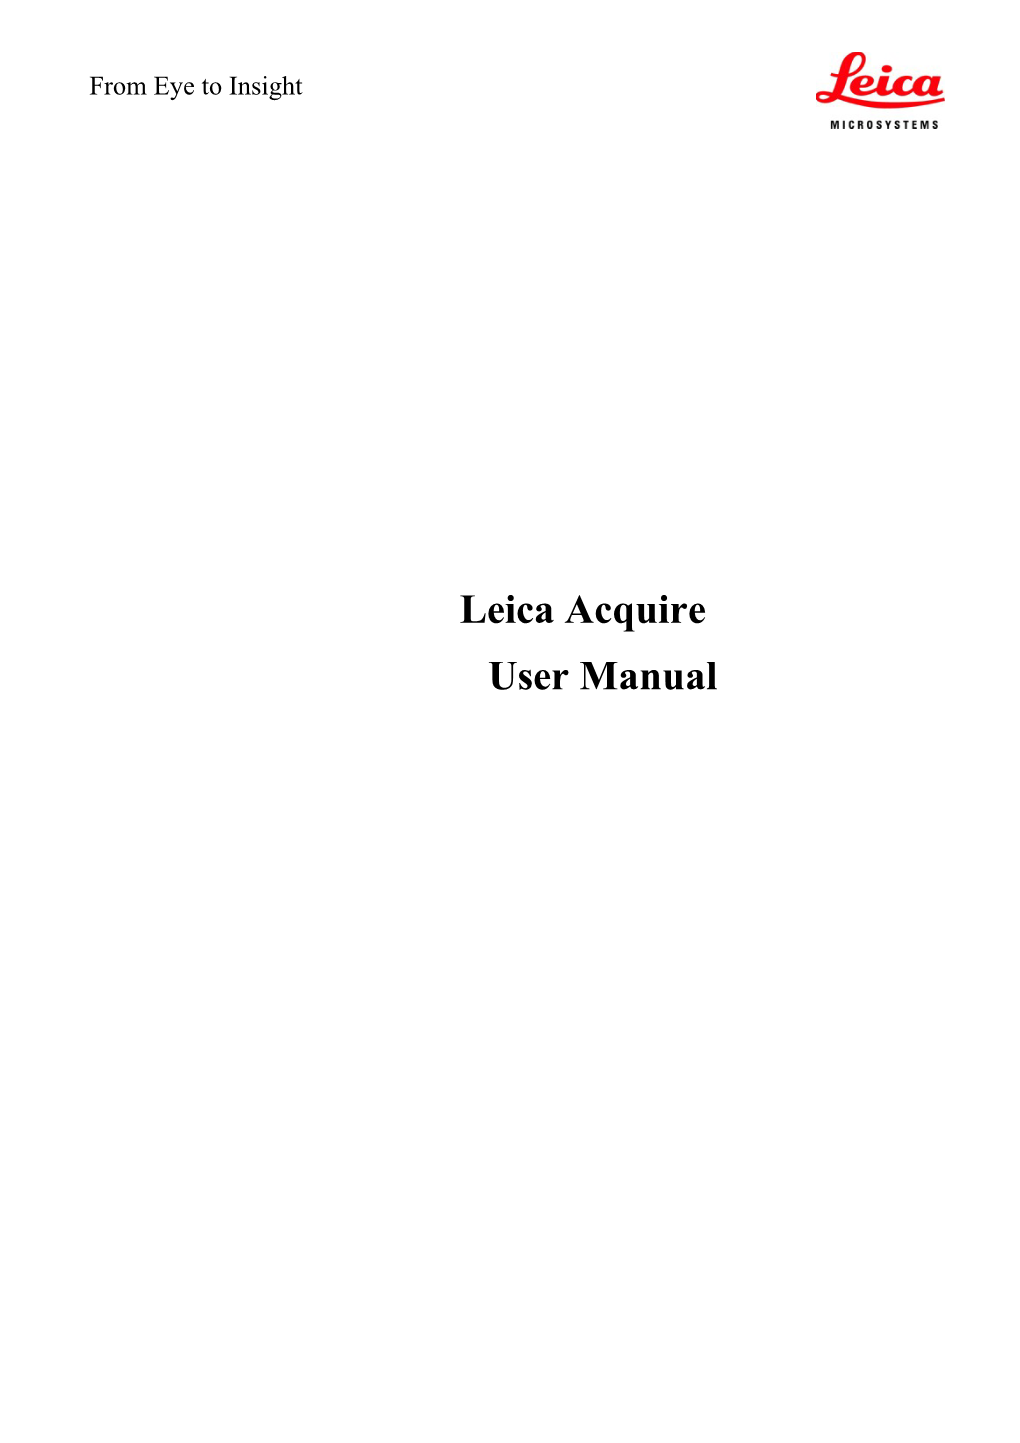 Leica Acquire User Manual